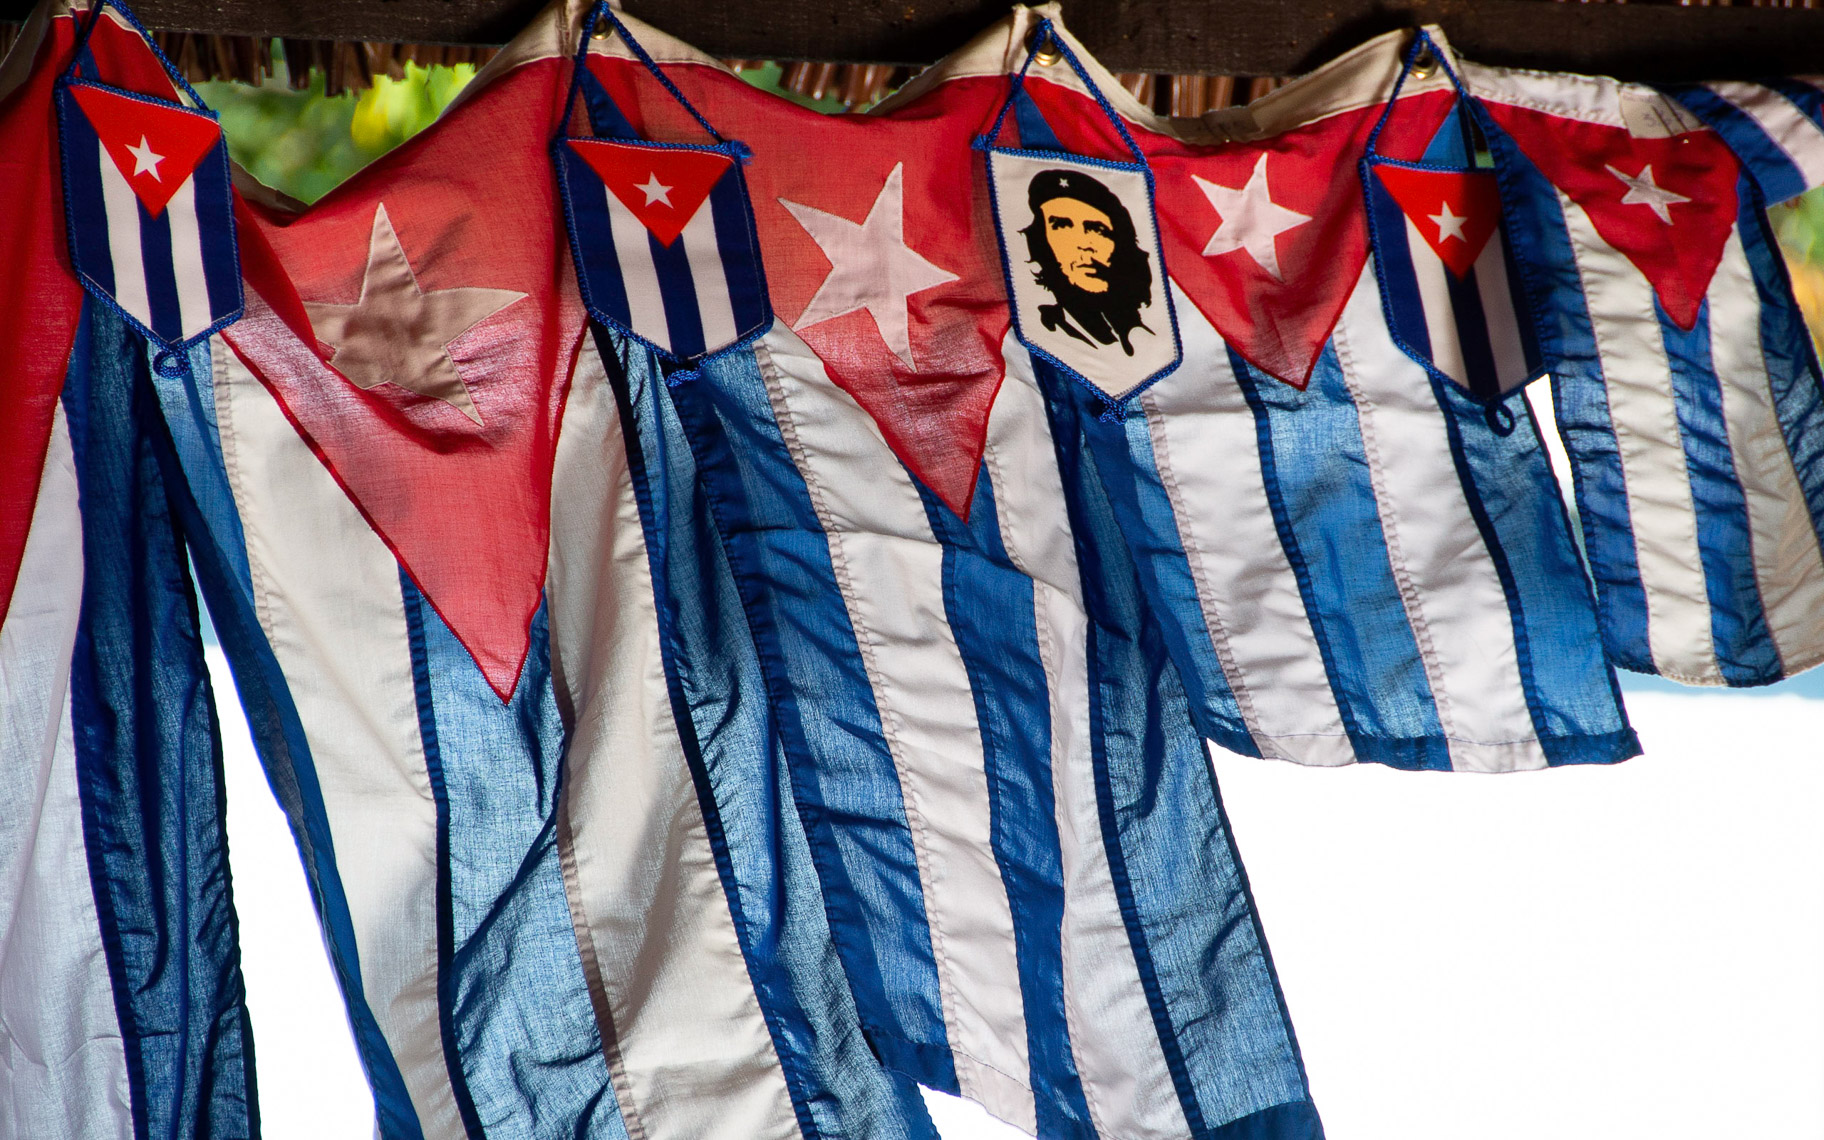 TP_1-111. Che still honored- Cuba